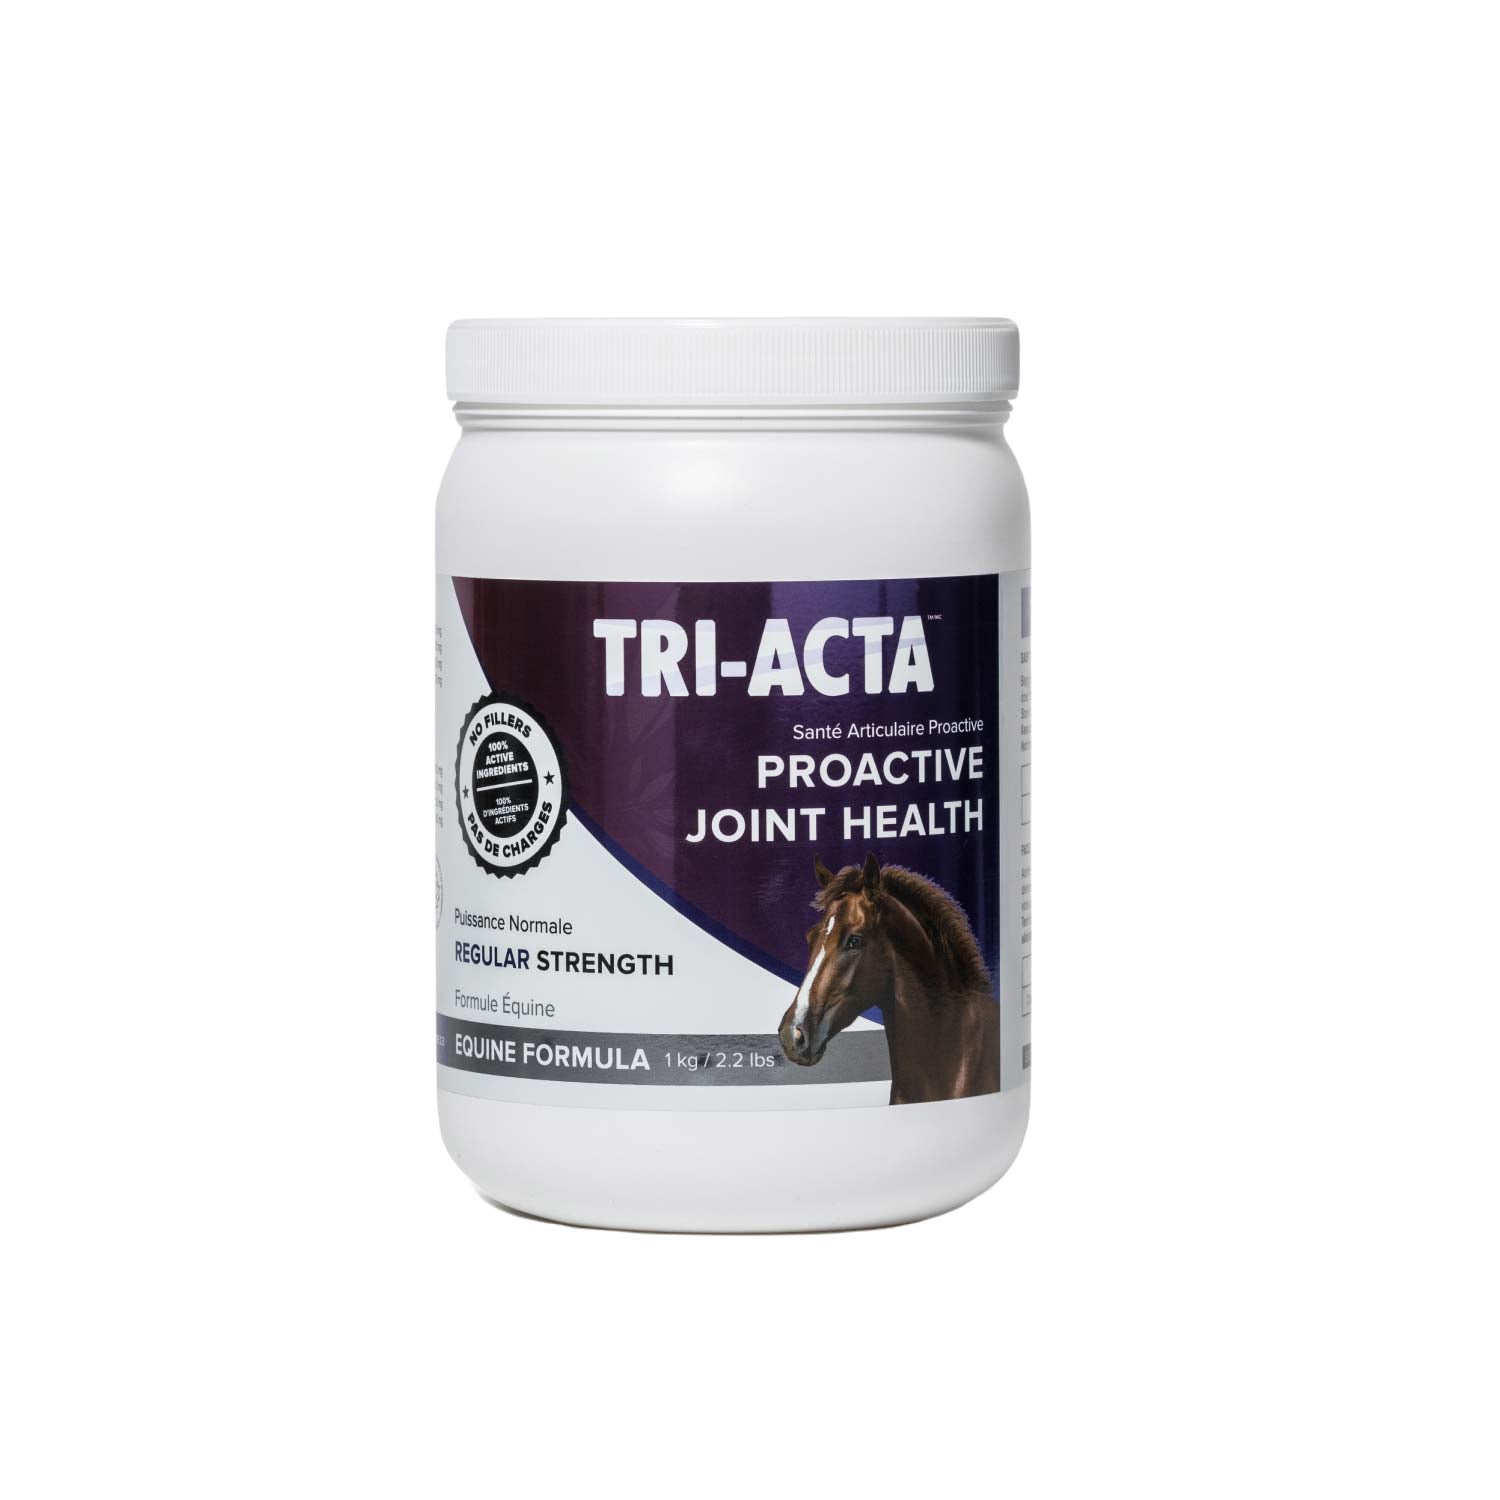 TRI-ACTA for Equine.